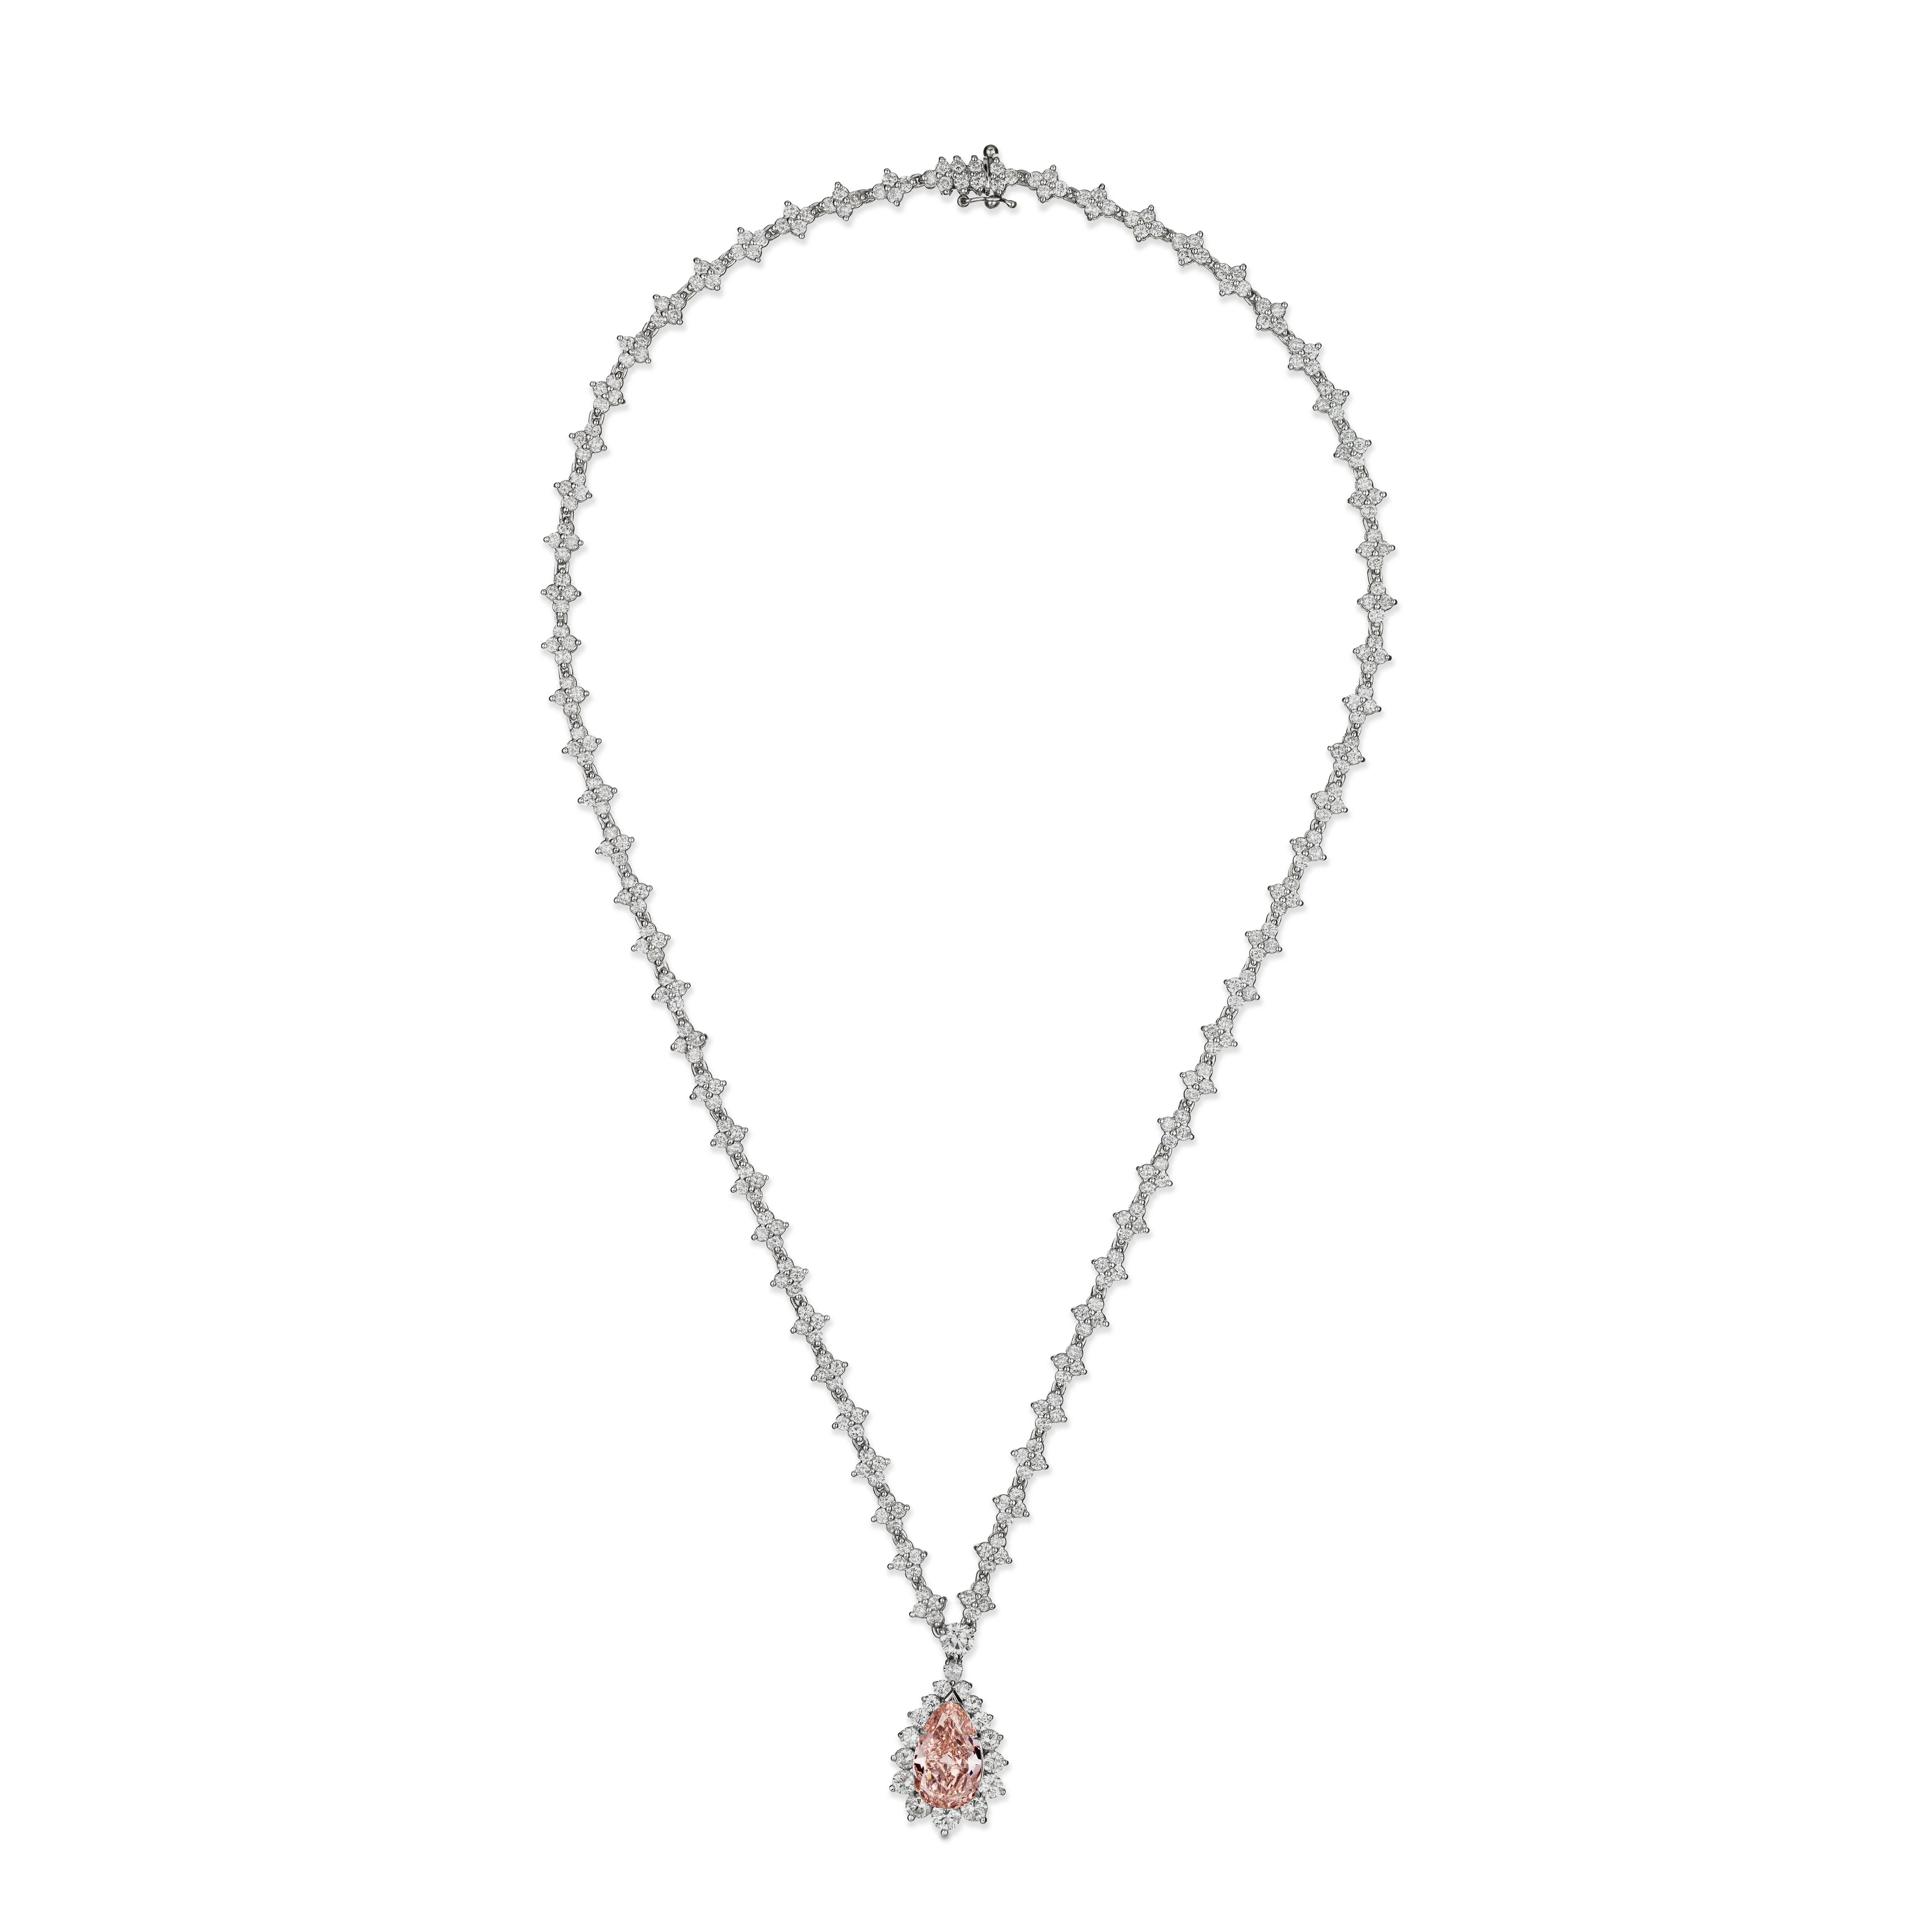 Nous avons le plaisir de vous proposer ce grand et rare collier de diamants en platine et certifié GIA de couleur rose orangé. Ce magnifique collier comprend 15,10ctw de diamants naturels de couleur blanche et fantaisie, dont un époustouflant